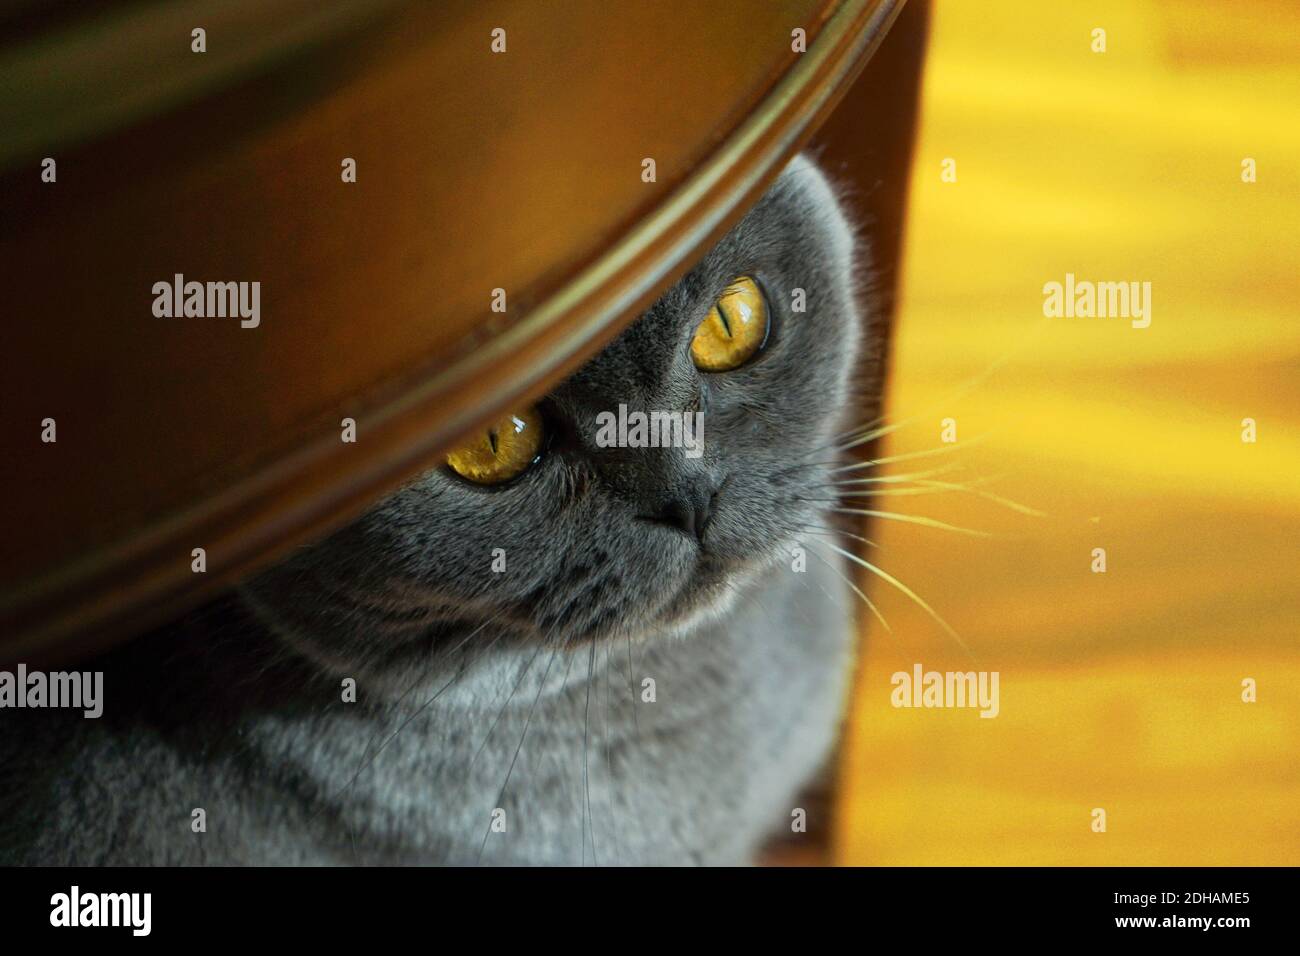 Graue britische Rasse Katze sitzt unter dem Tisch. Scotish Falte Katze in Wohnräumen. Konzept der Farbe des Jahres 2021 mit hellen leuchtenden Gelb- und Grautönen. Weichfokus, Nahaufnahme. Stockfoto